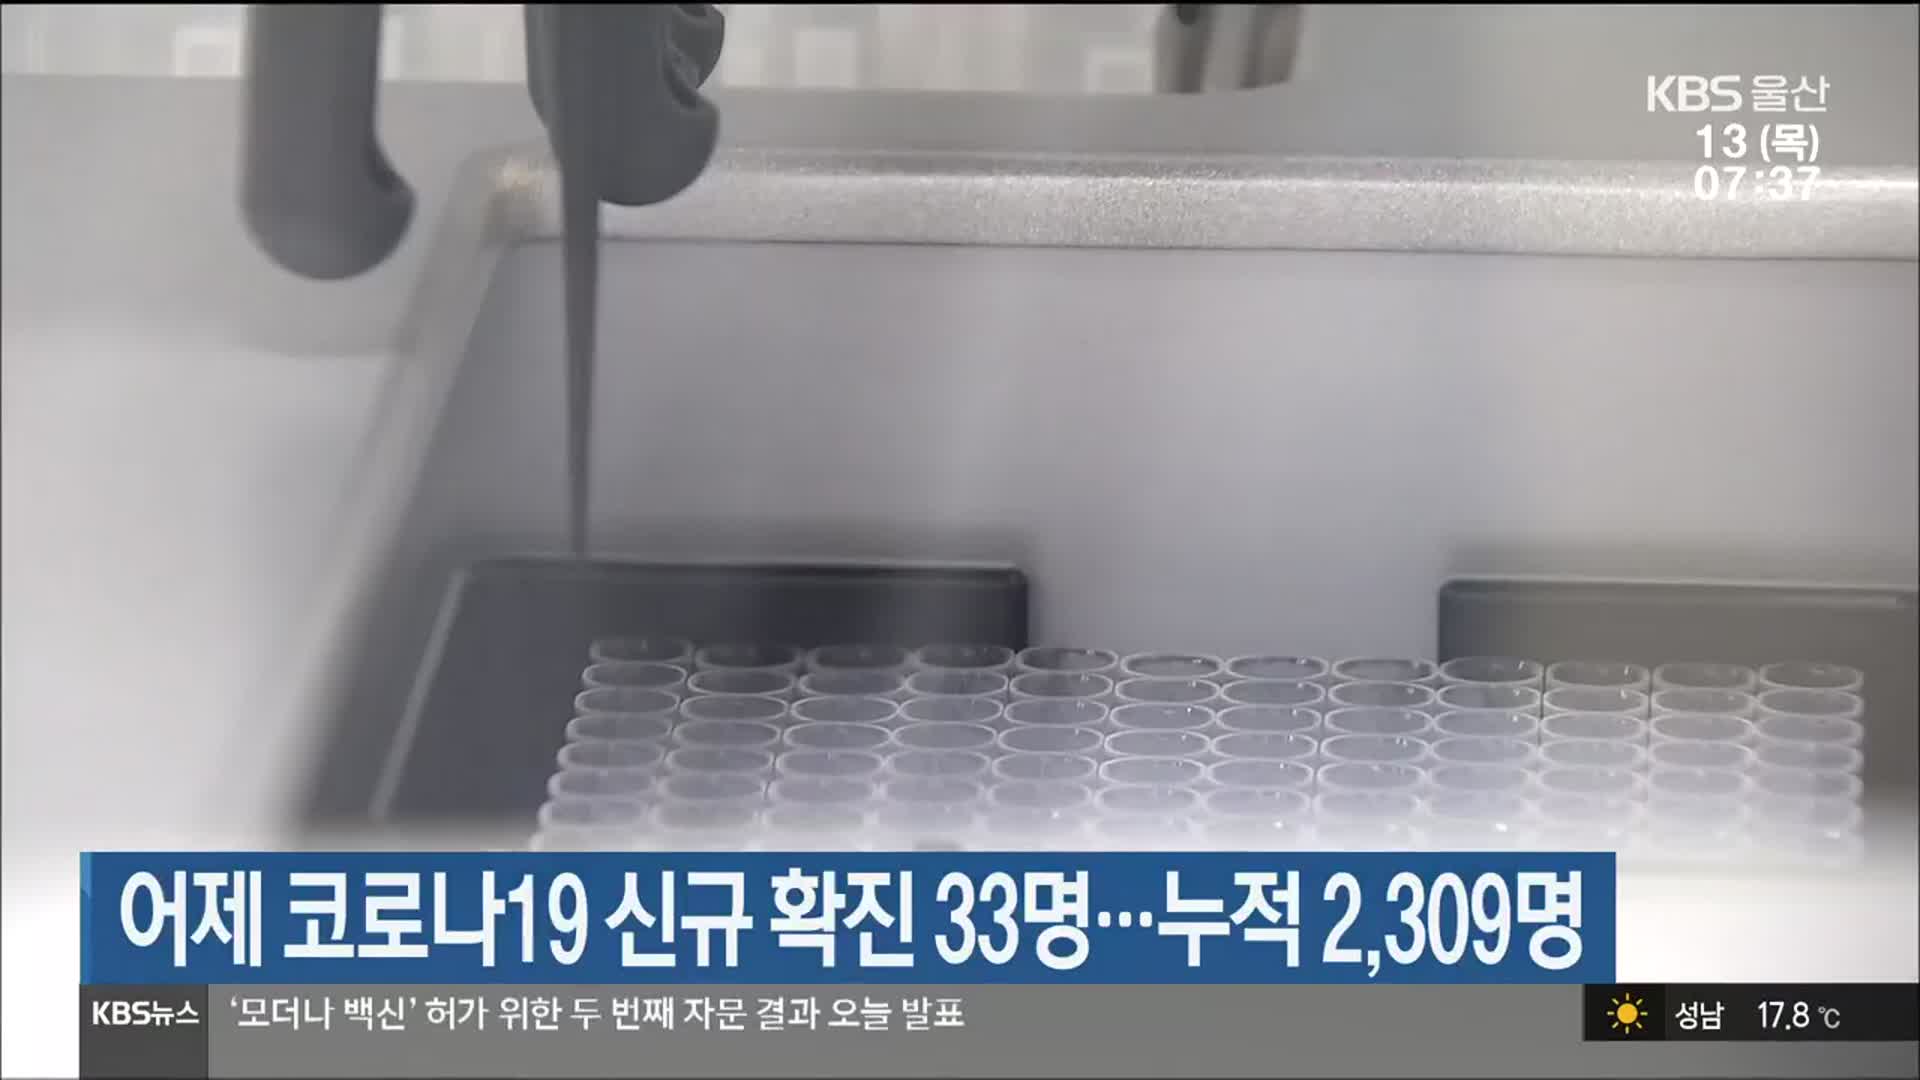 어제 코로나19 신규 확진 33명…울산 누적 2,309명